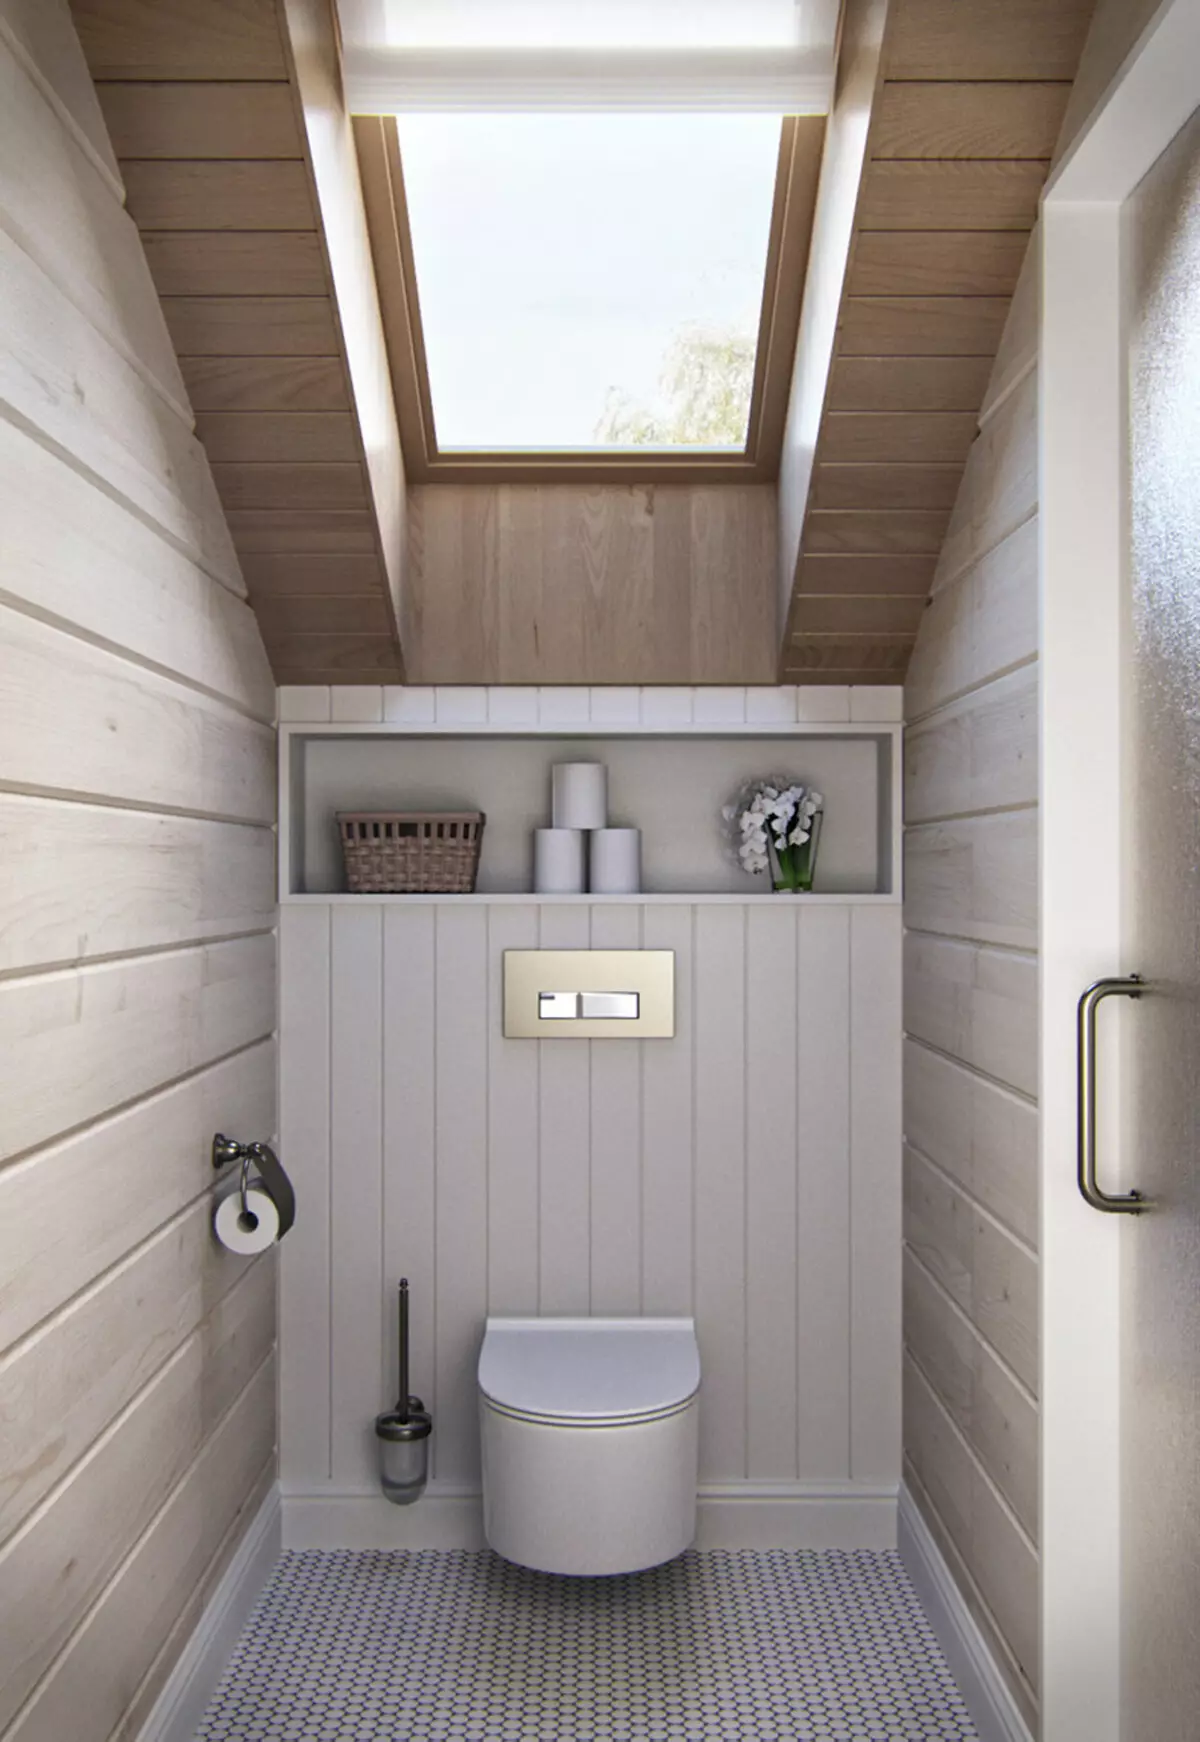 ห้องน้ำในบ้านไม้ (76 รูป): การออกแบบห้องพักในบ้านของบาร์ในประเทศตัวอย่างของพื้นเสร็จสิ้นแผนการระบายอากาศ 10475_65